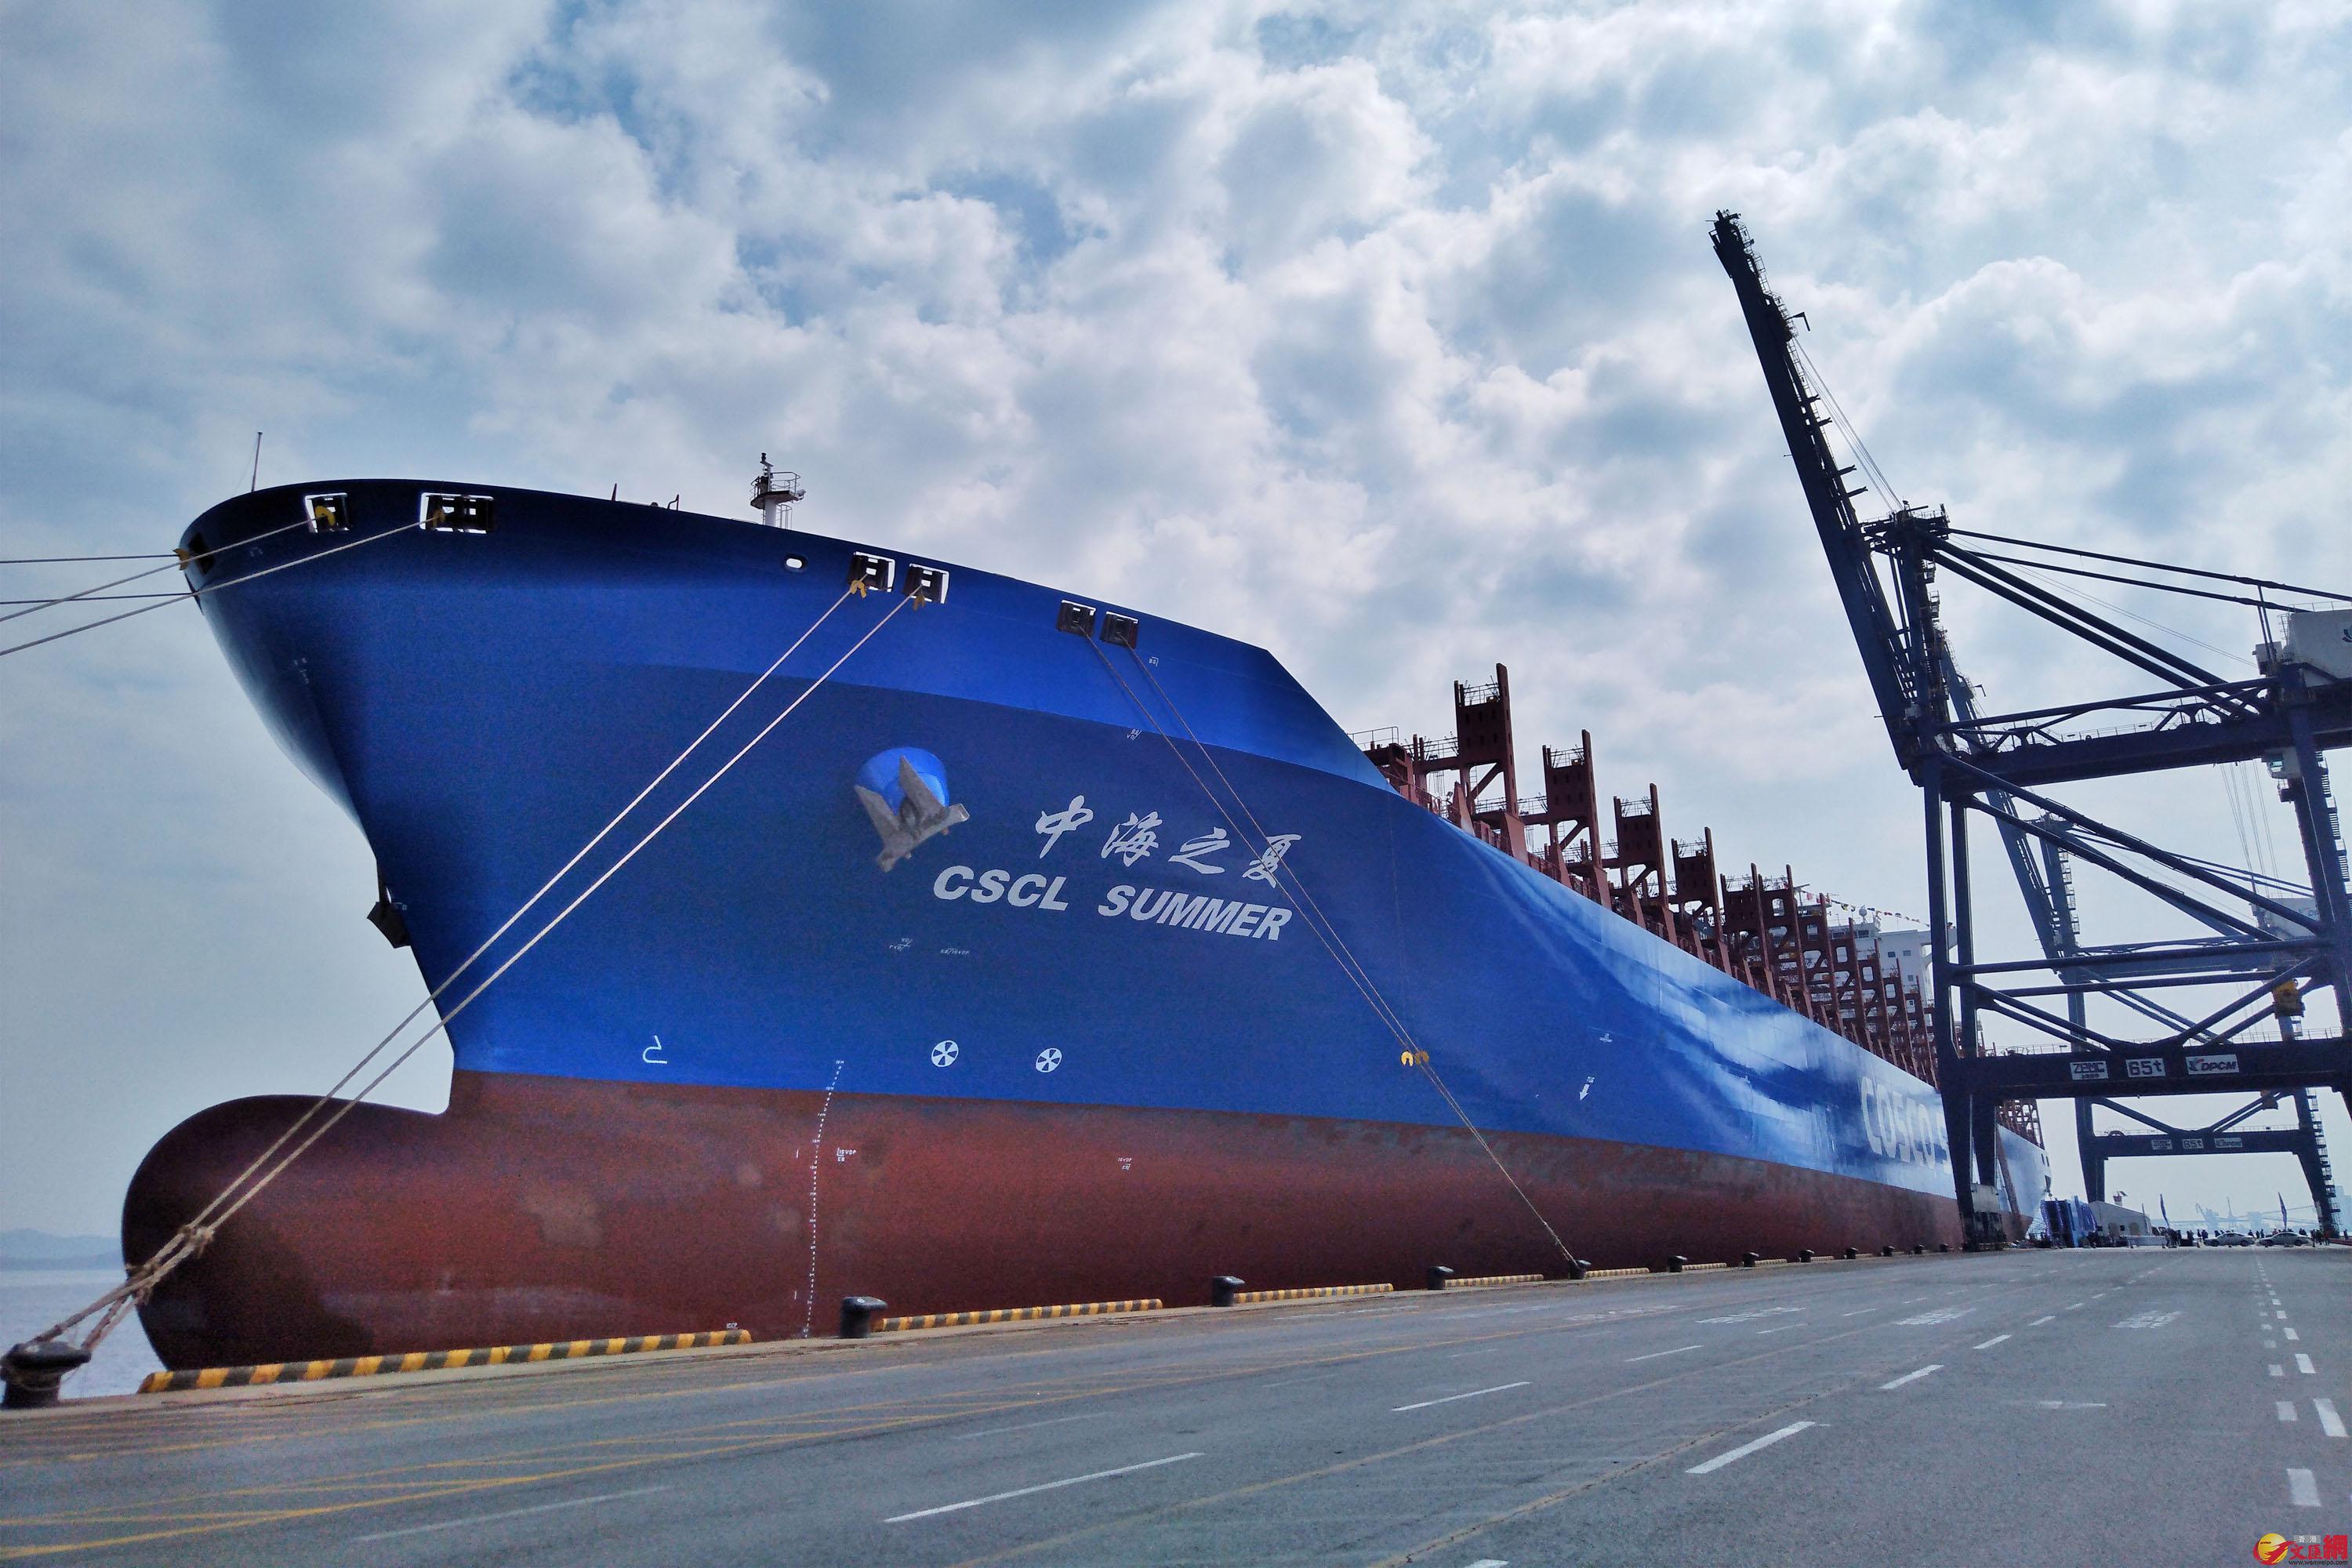 首航美西干线的「中海之夏」号集装箱船在大连港装载货物 记者宋伟摄